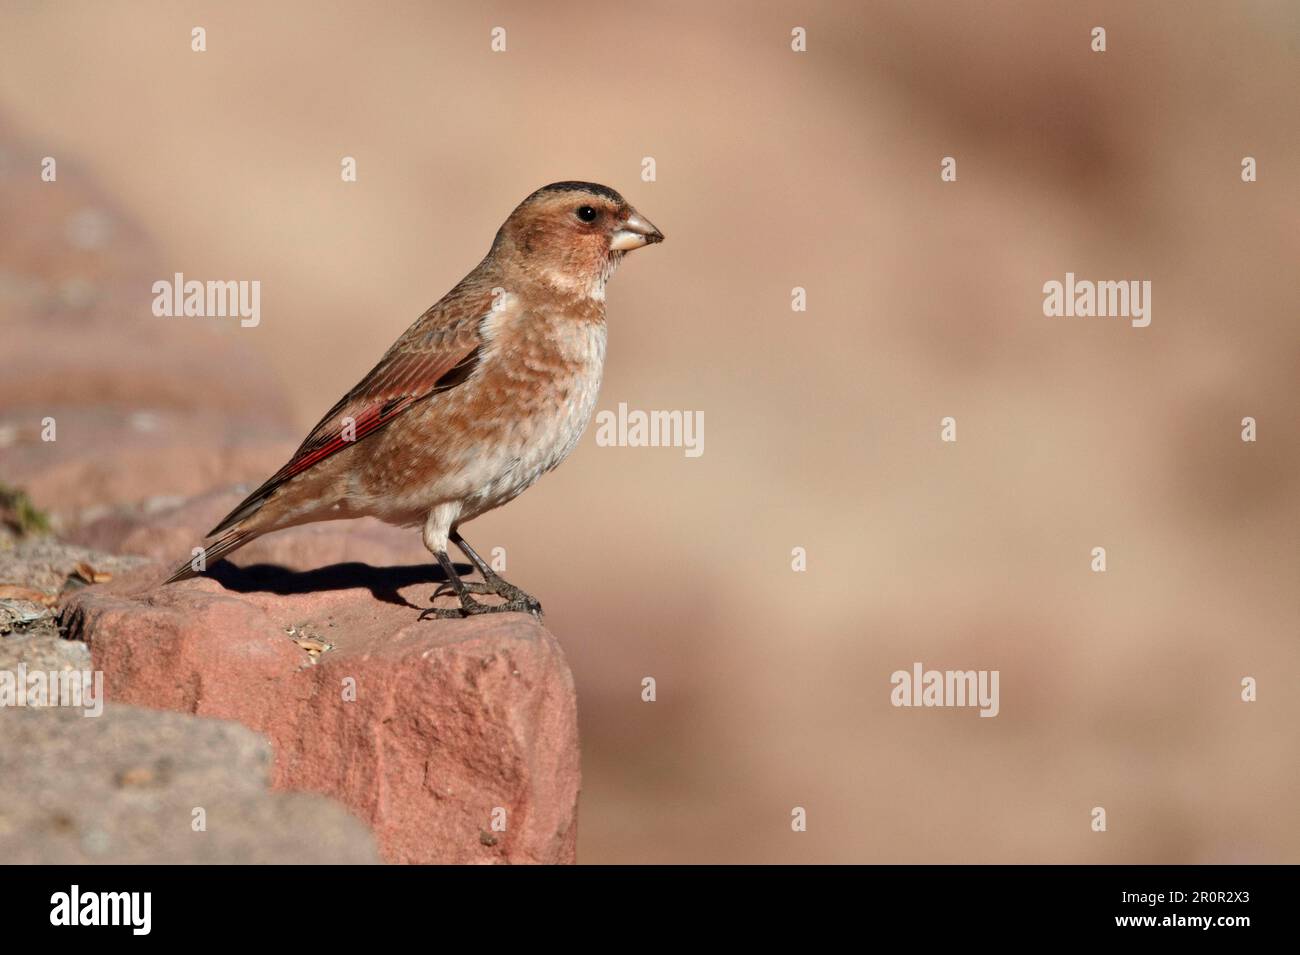 Finch ailé de cramoisi (Rhodopechys sanguinea aliena) sous-espèce nord-africaine, mâle adulte, debout sur la roche, Oukaimeden, Maroc Banque D'Images